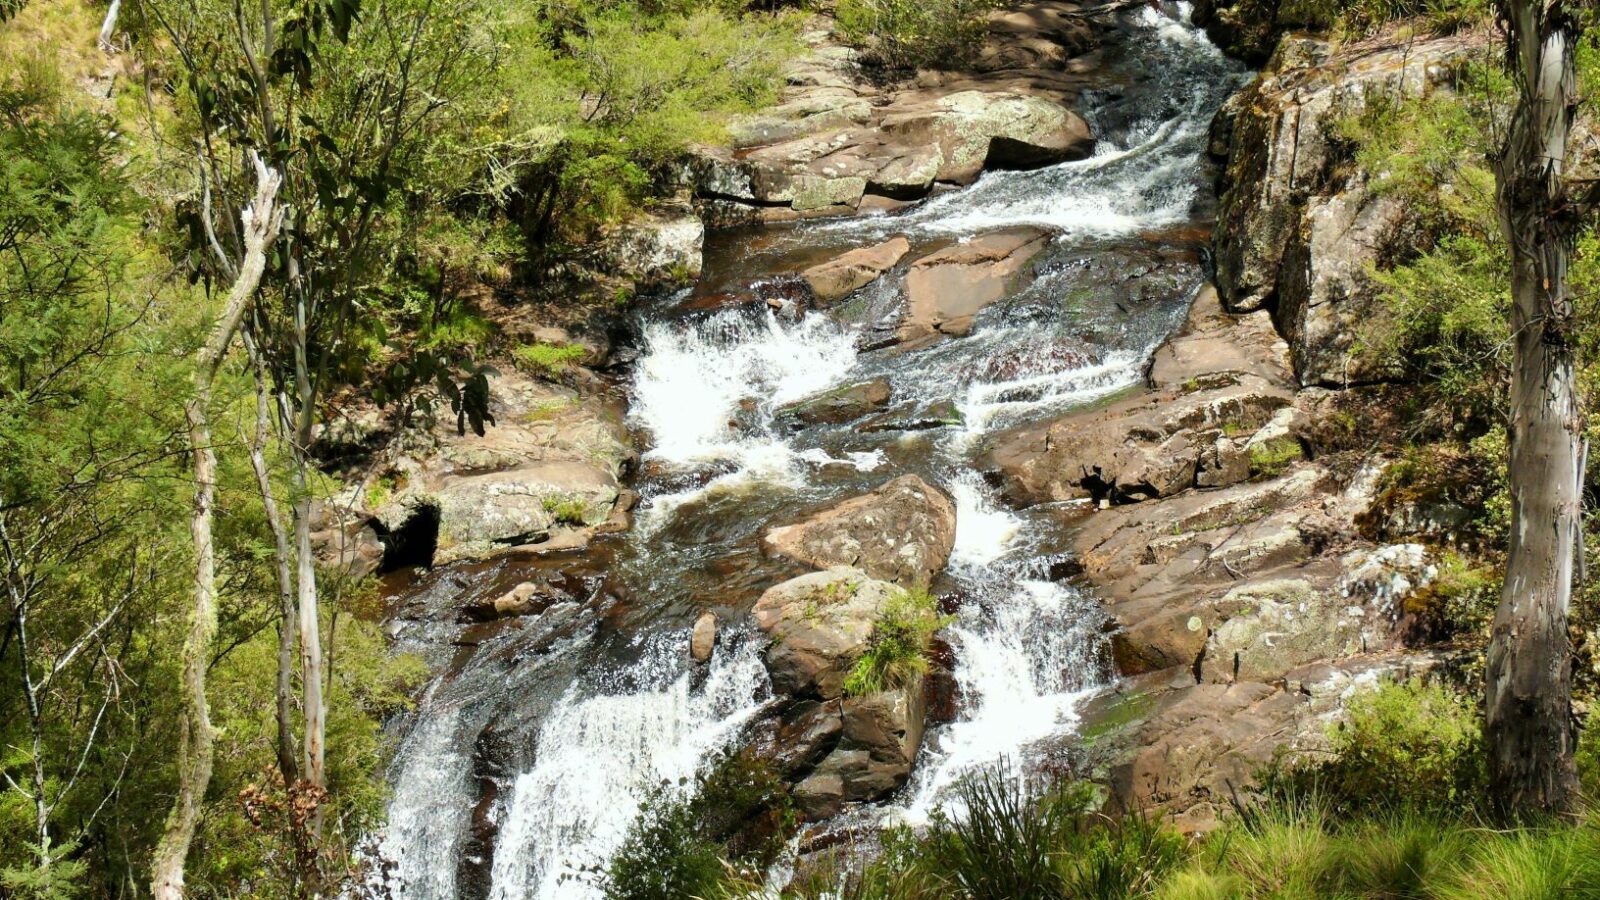 Polblue Falls, Barrington Tops, large rock falls